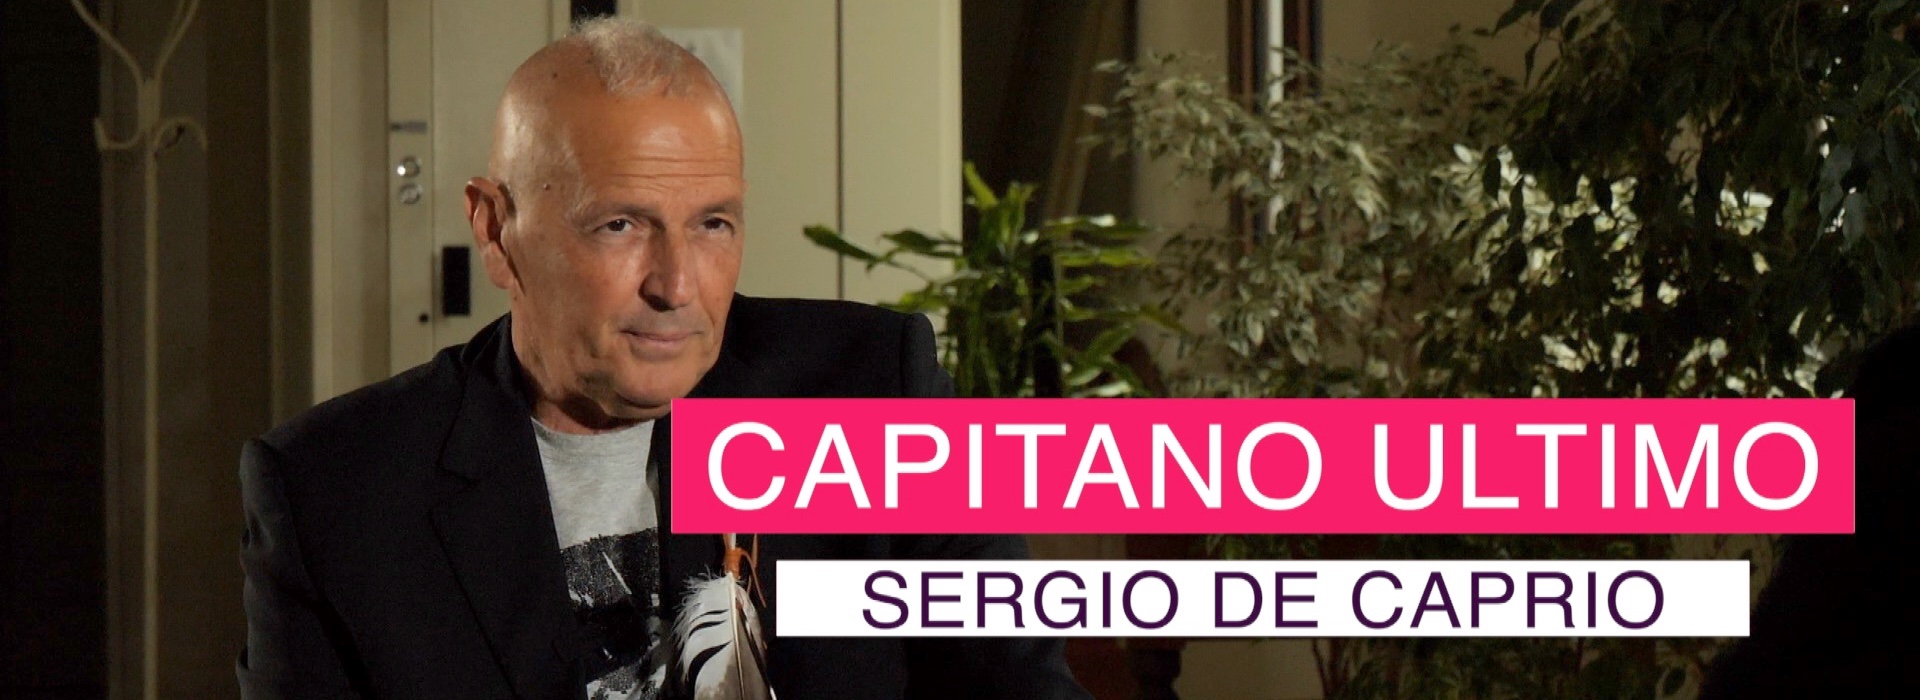 Sergio De Caprio: "ripartire dai territori per annientare definitivamente le mafie"